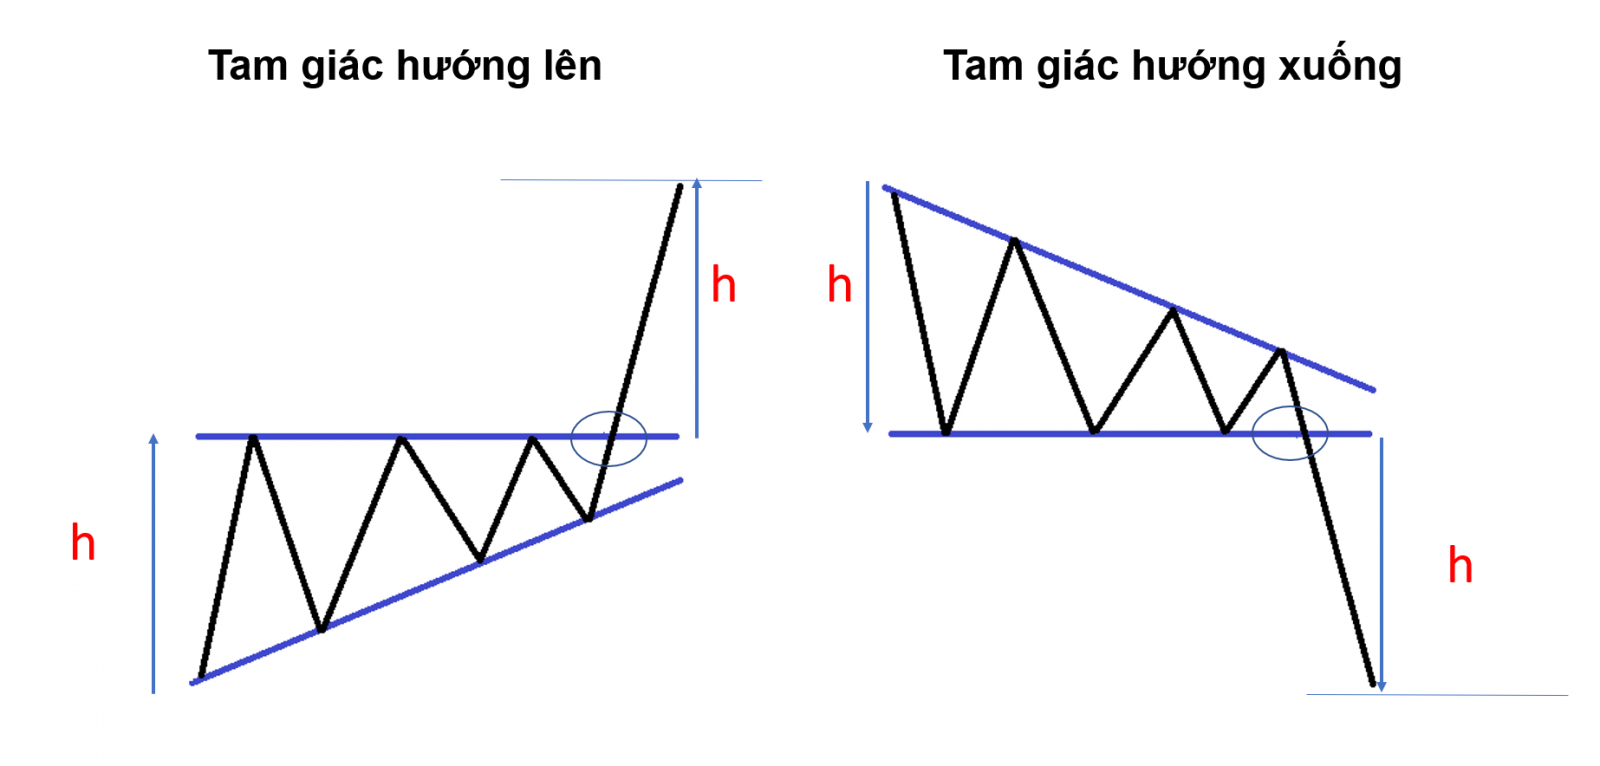 Mô hình tam giác và ứng dụng trong giao dịch cổ phiếu